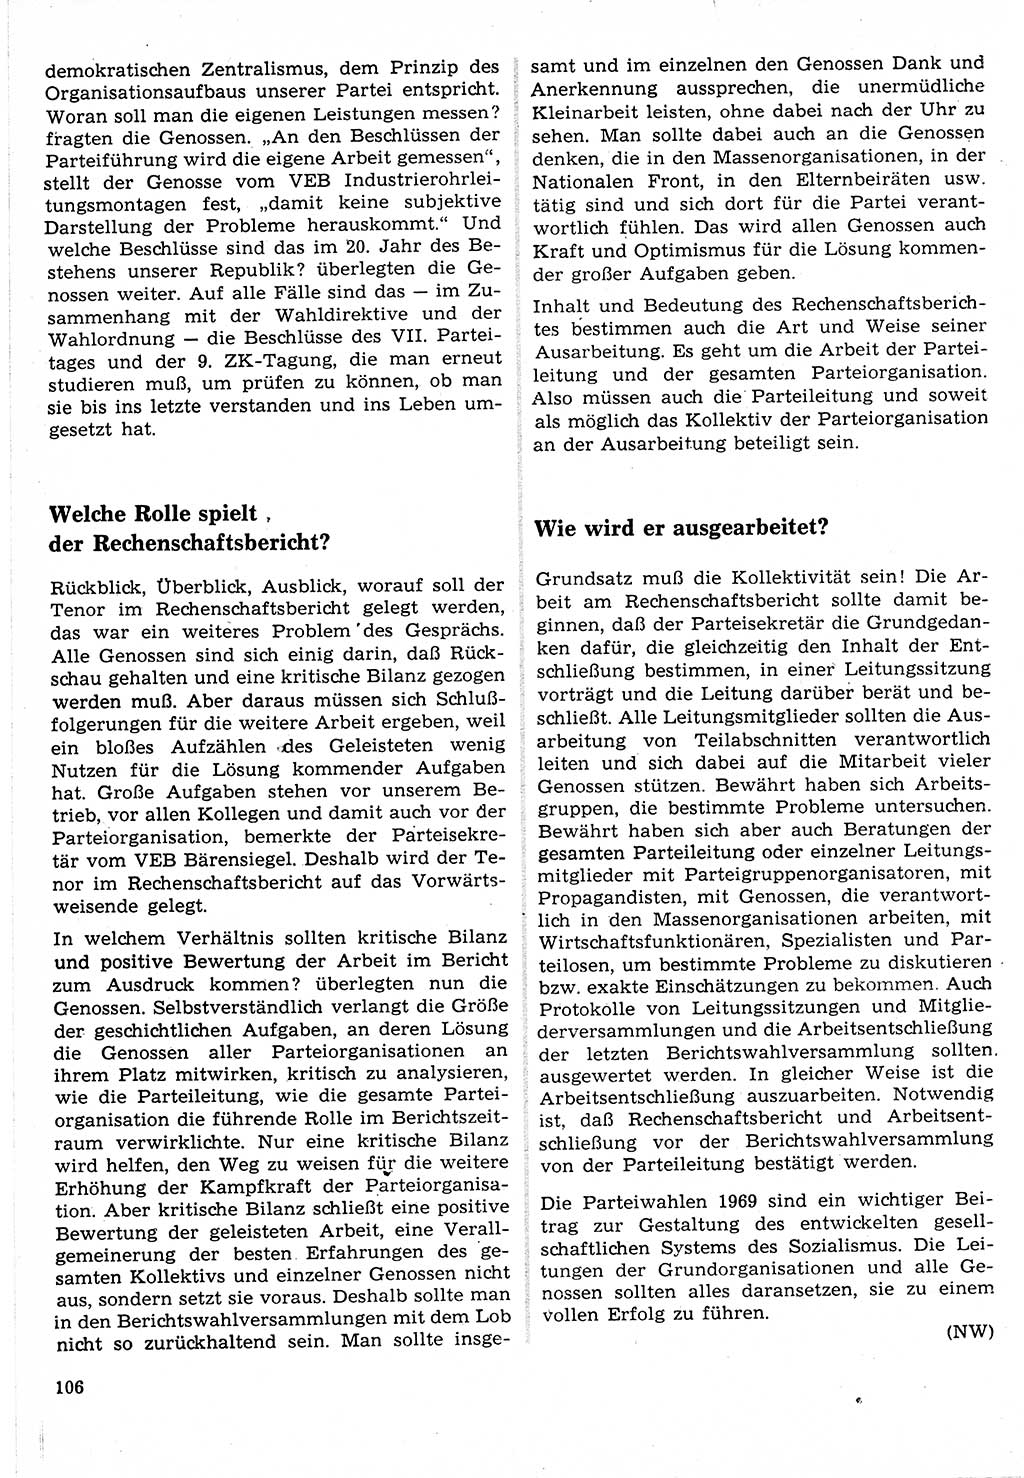 Neuer Weg (NW), Organ des Zentralkomitees (ZK) der SED (Sozialistische Einheitspartei Deutschlands) für Fragen des Parteilebens, 24. Jahrgang [Deutsche Demokratische Republik (DDR)] 1969, Seite 106 (NW ZK SED DDR 1969, S. 106)